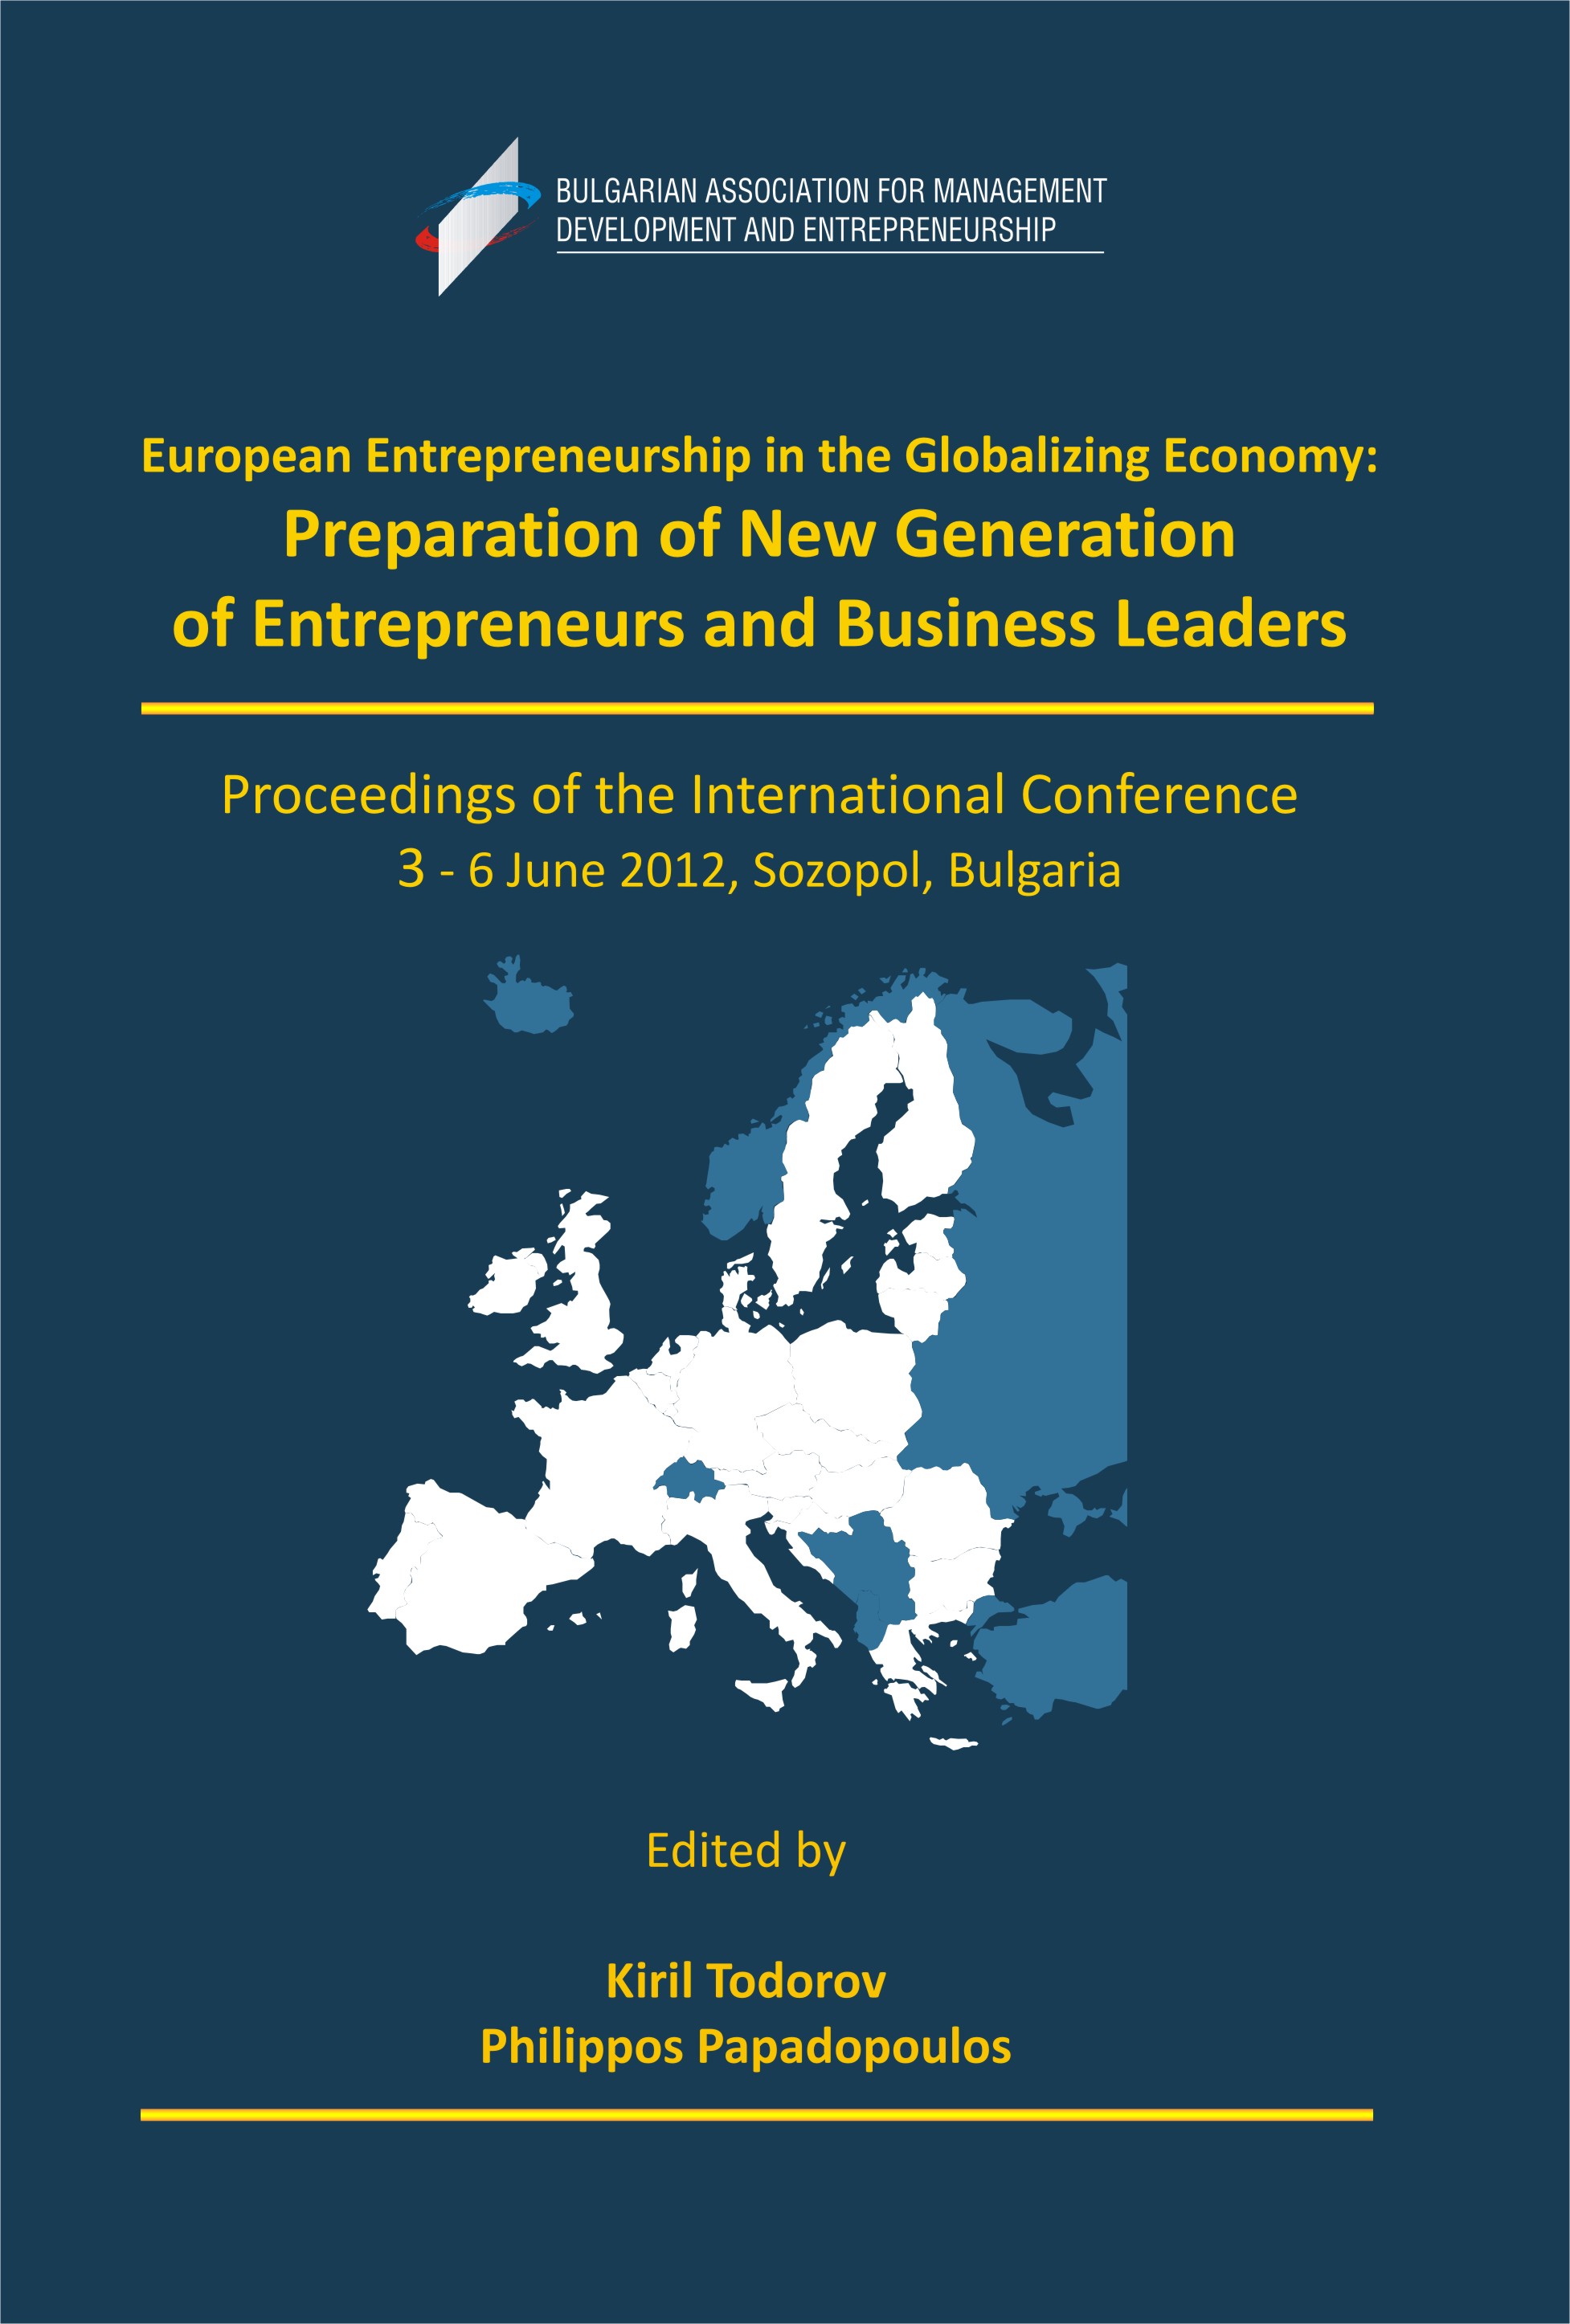 entrepreneurship_Cover Proceedings Sozopol 2012.jpg